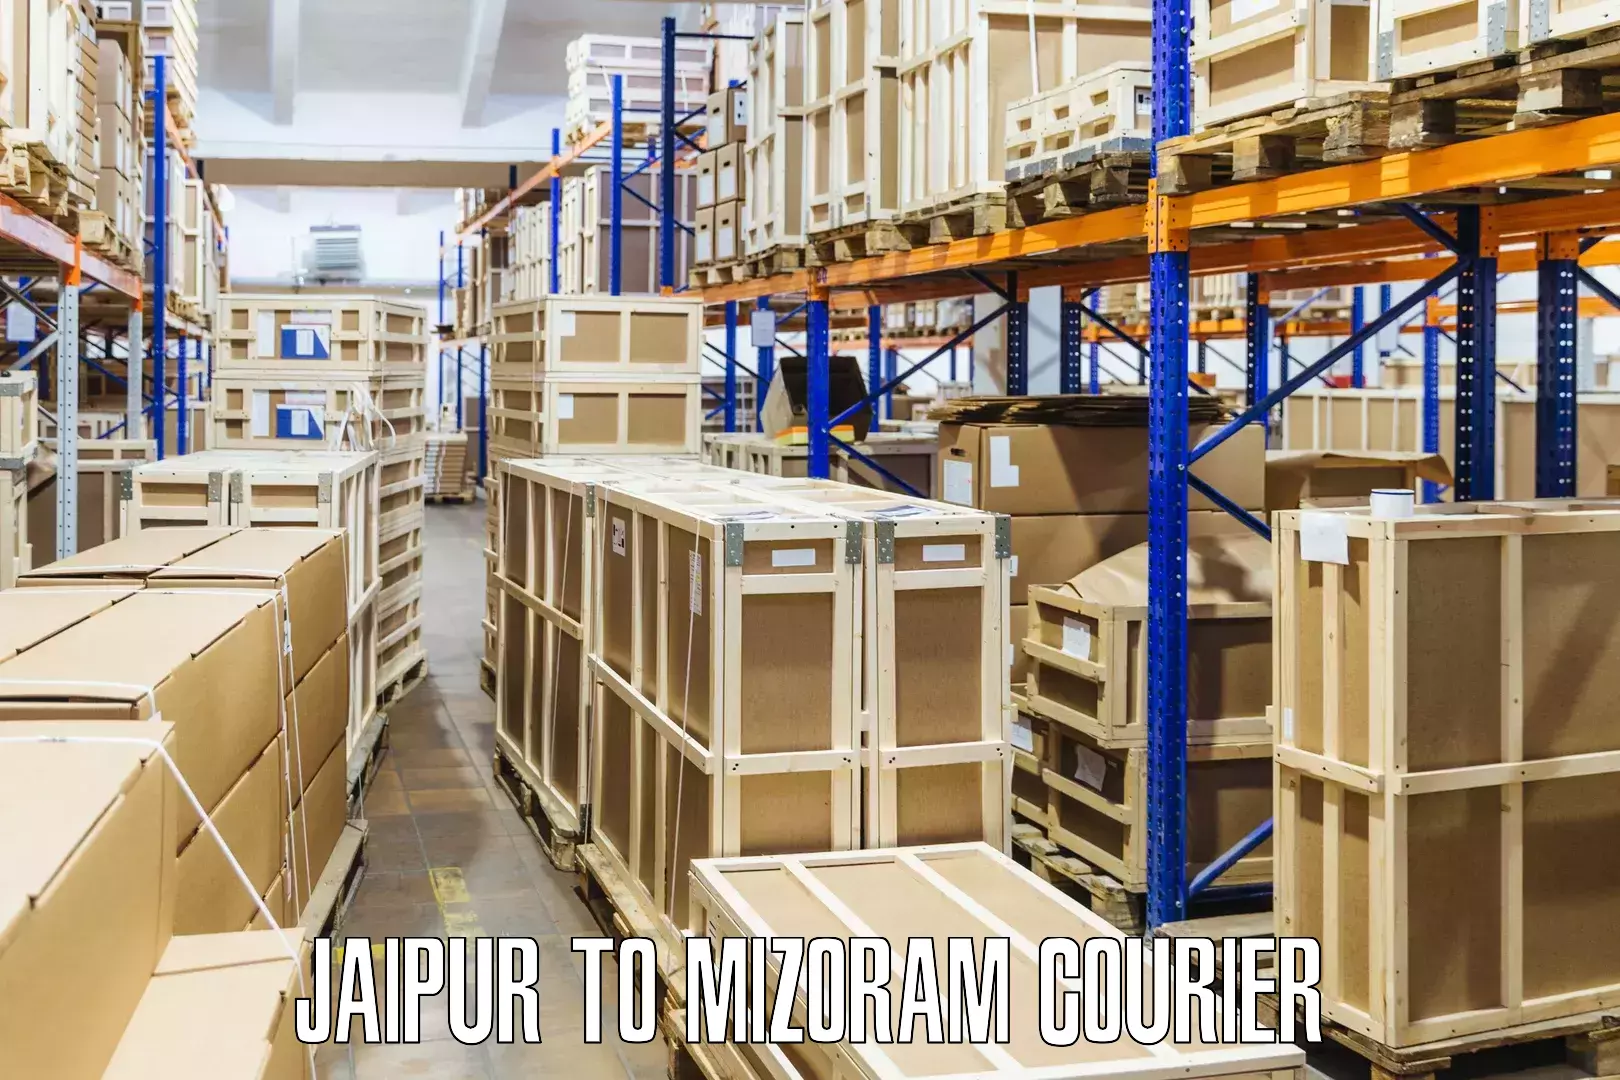 Premium courier services Jaipur to Mizoram